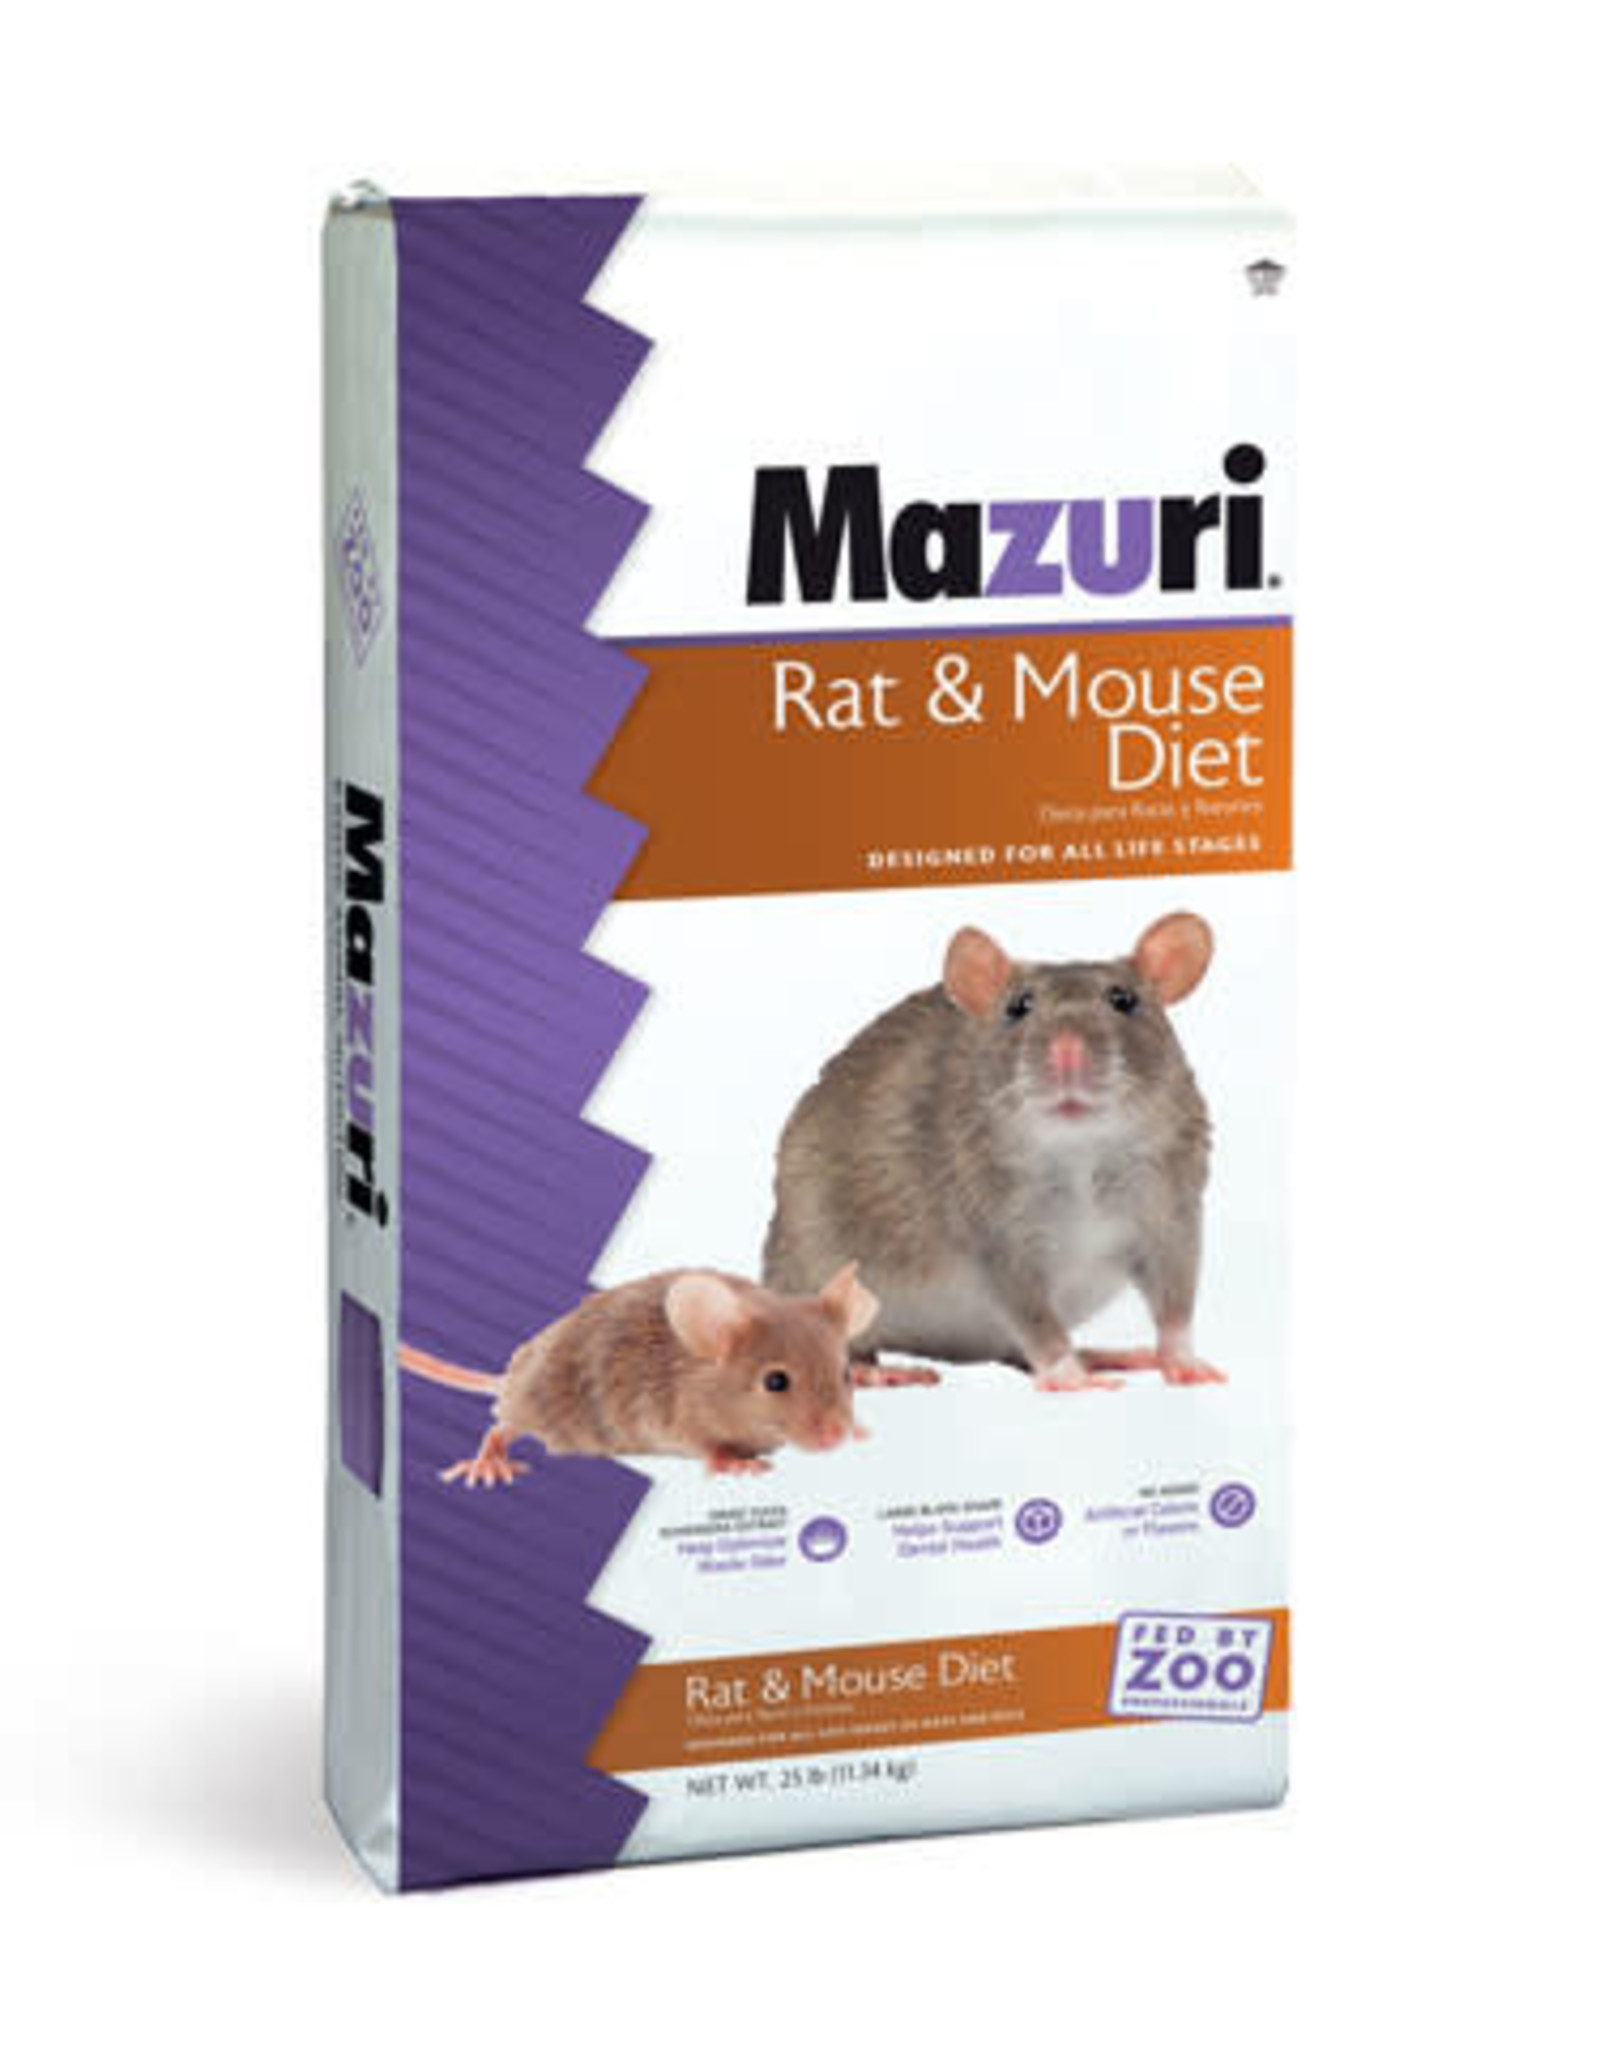 PURINA MILLS, INC. MAZURI RAT & MOUSE DIET 25LBS